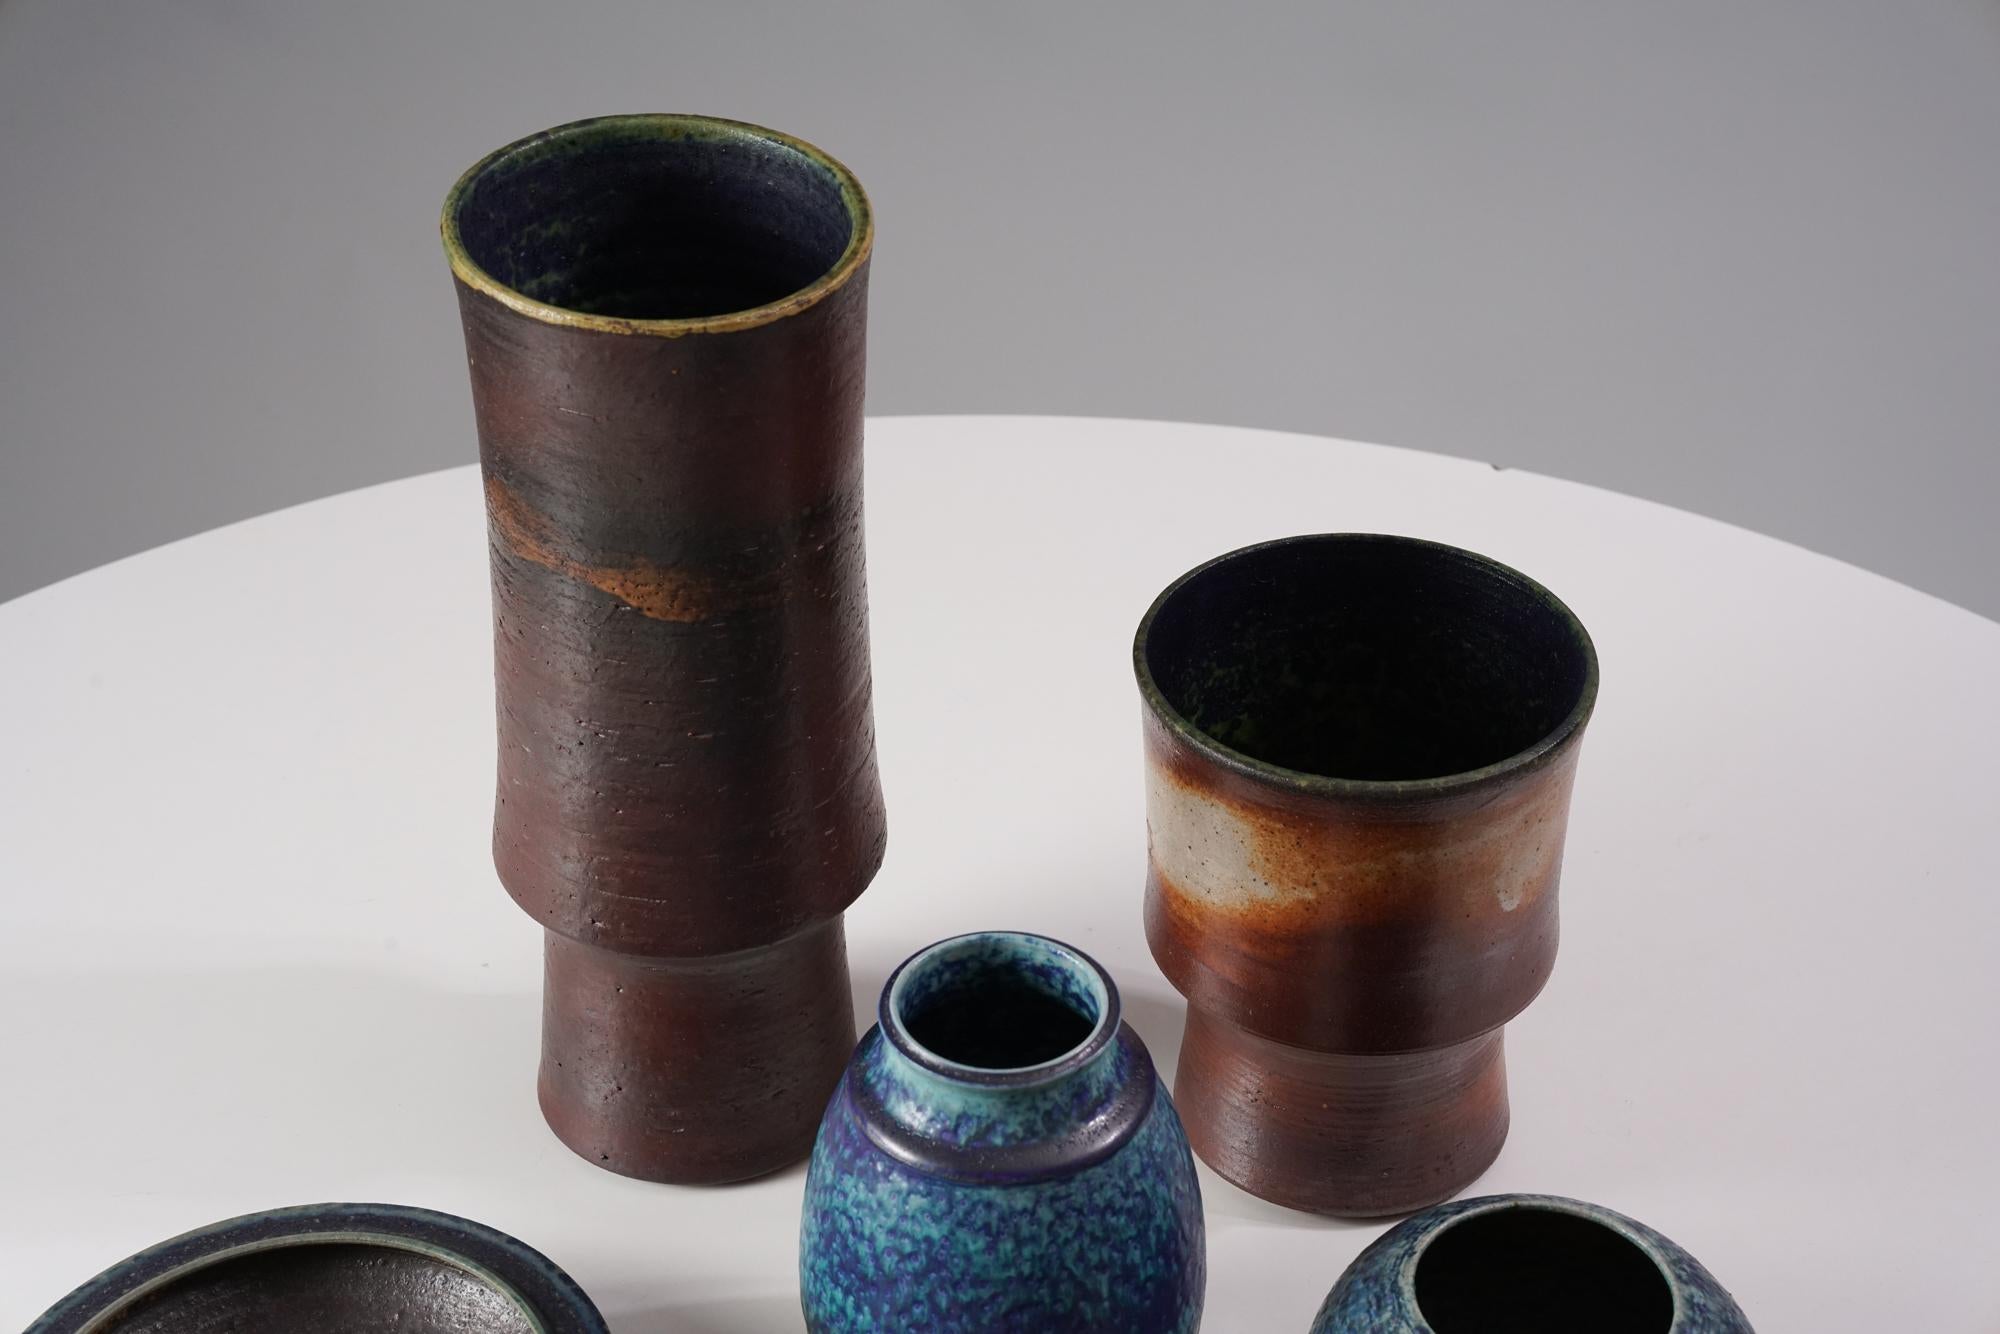 Keramikset von Liisa Hallamaa für Arabia aus den 1960/1970er Jahren. Das Set umfasst drei Vasen, zwei Schalen und zwei kleine Kerzenhalter. Guter Vintage-Zustand, leichte Patina und alters- und gebrauchsbedingte Abnutzung. Die Keramiken werden als